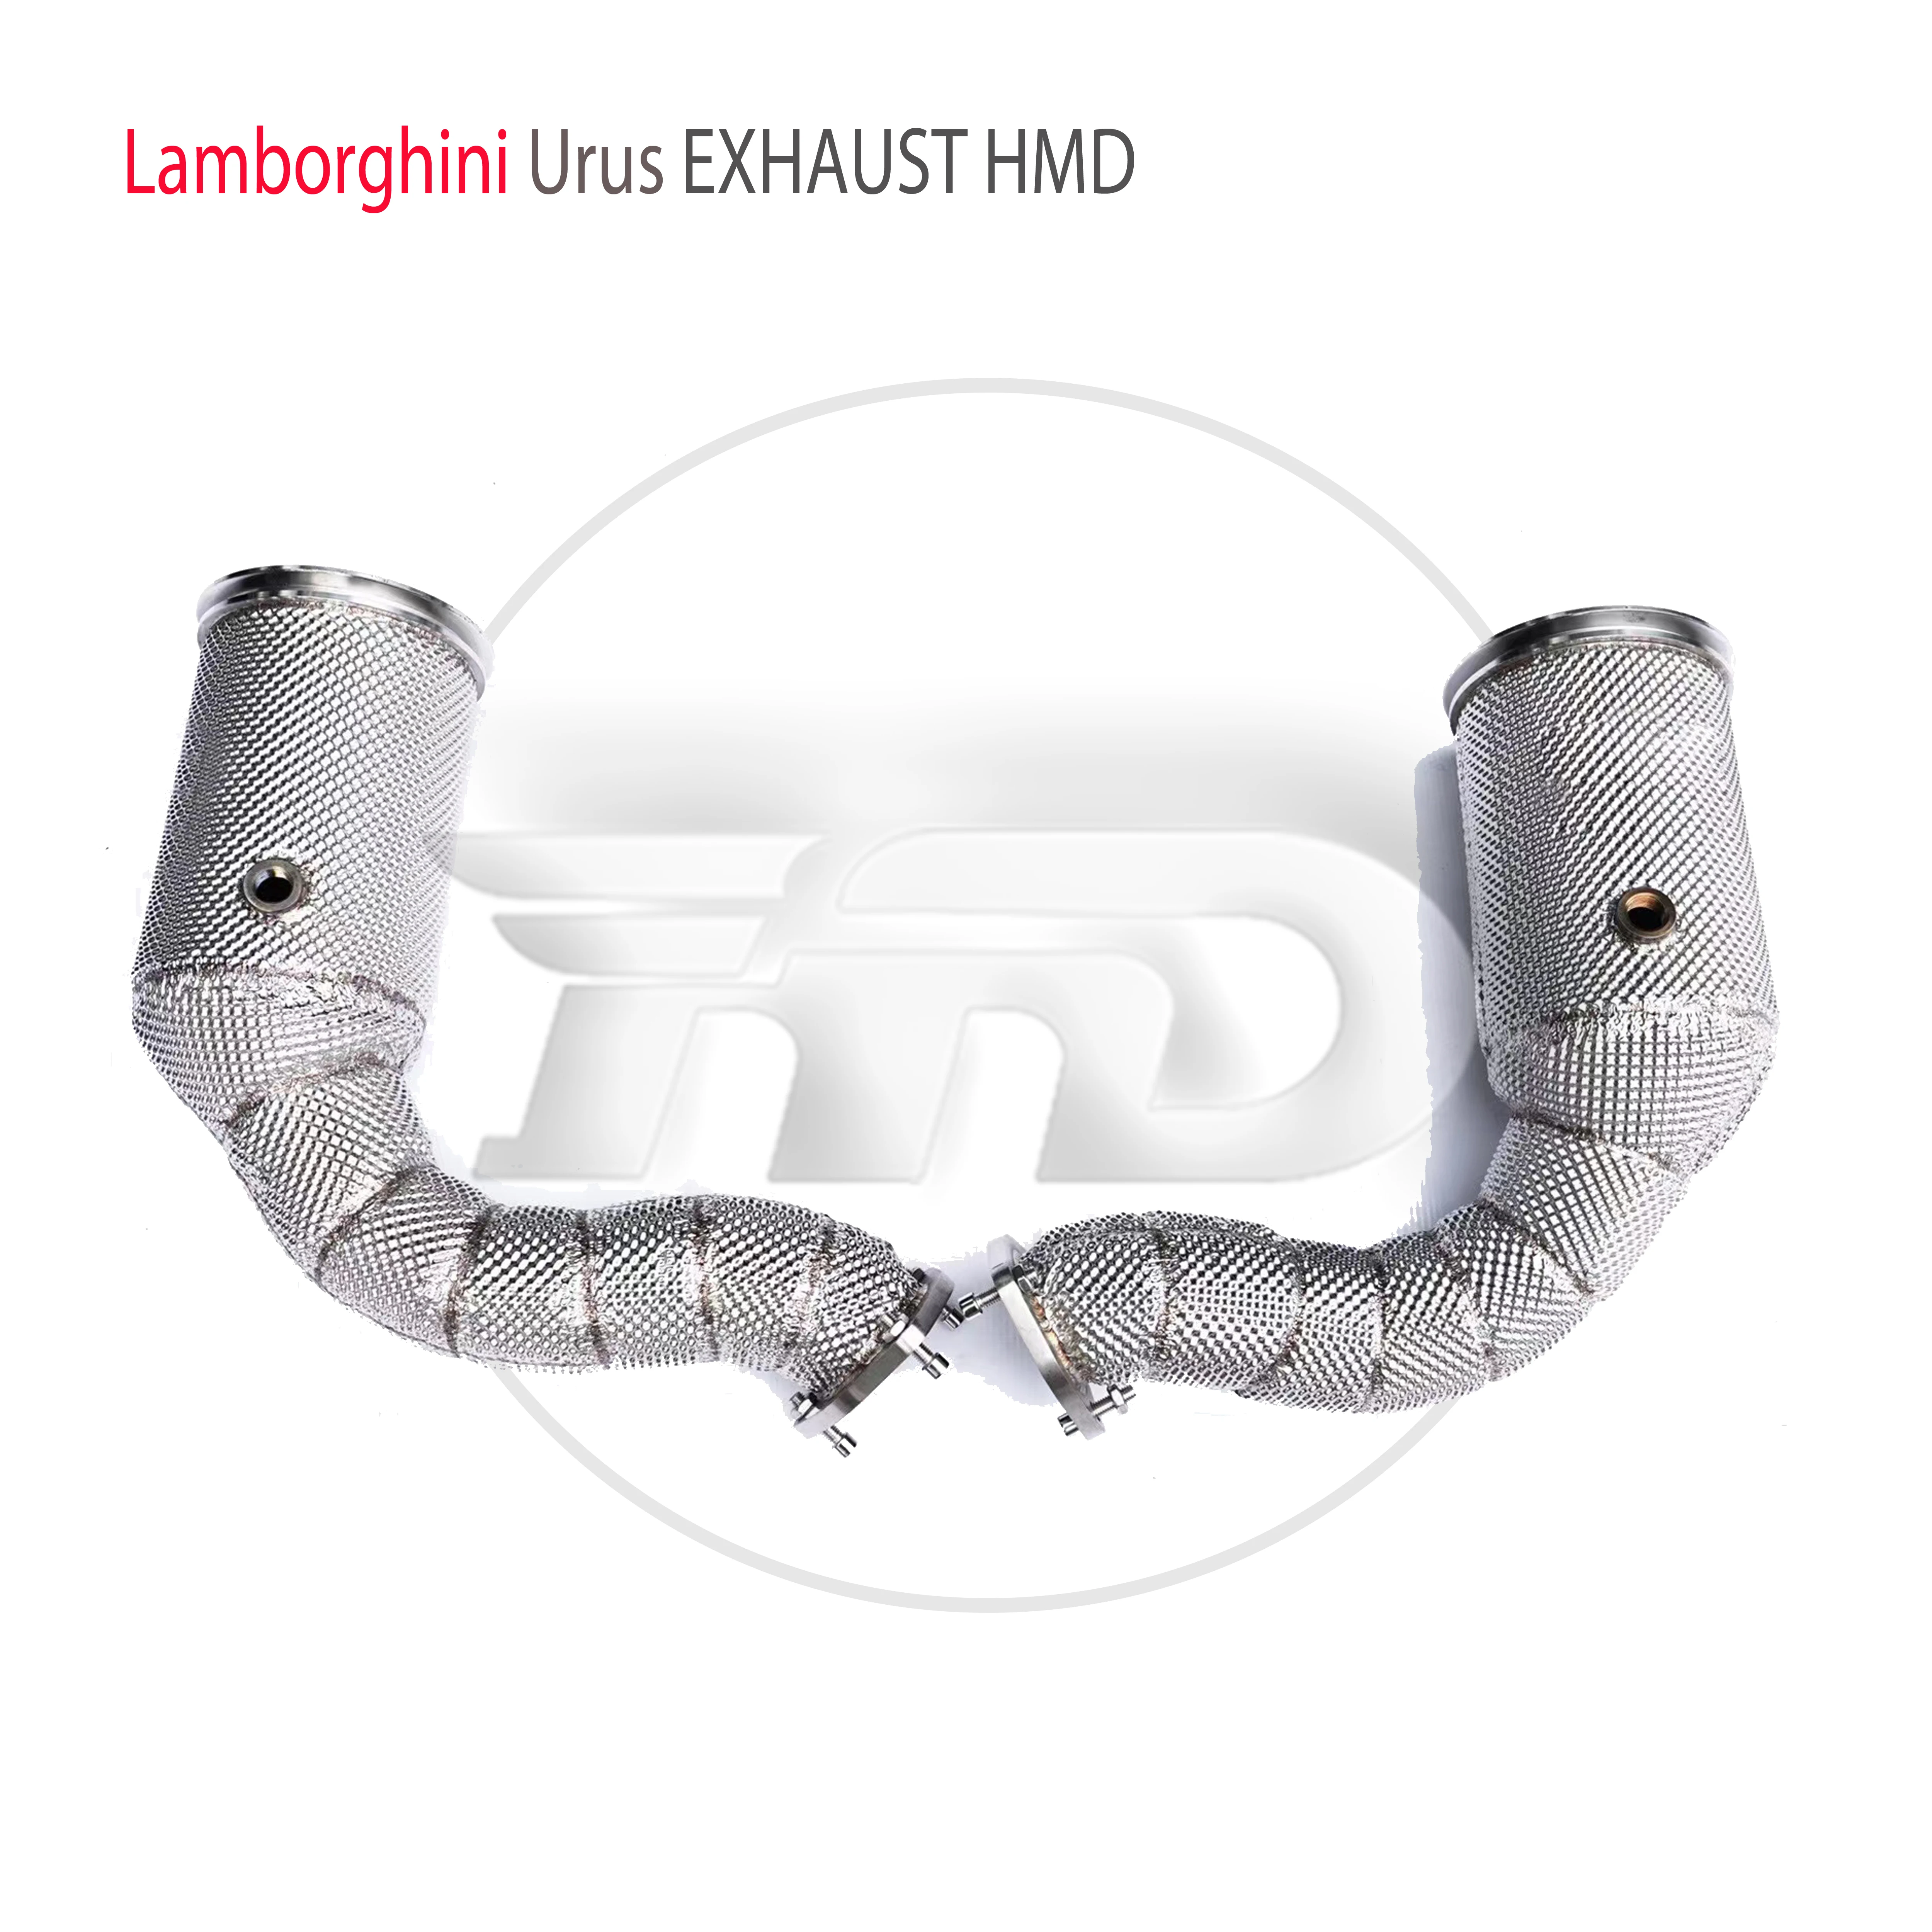 

HMD выхлопная система из нержавеющей стали с высокой производительностью потока, выхлопная труба для Lamborghini Urus, модификация автомобиля